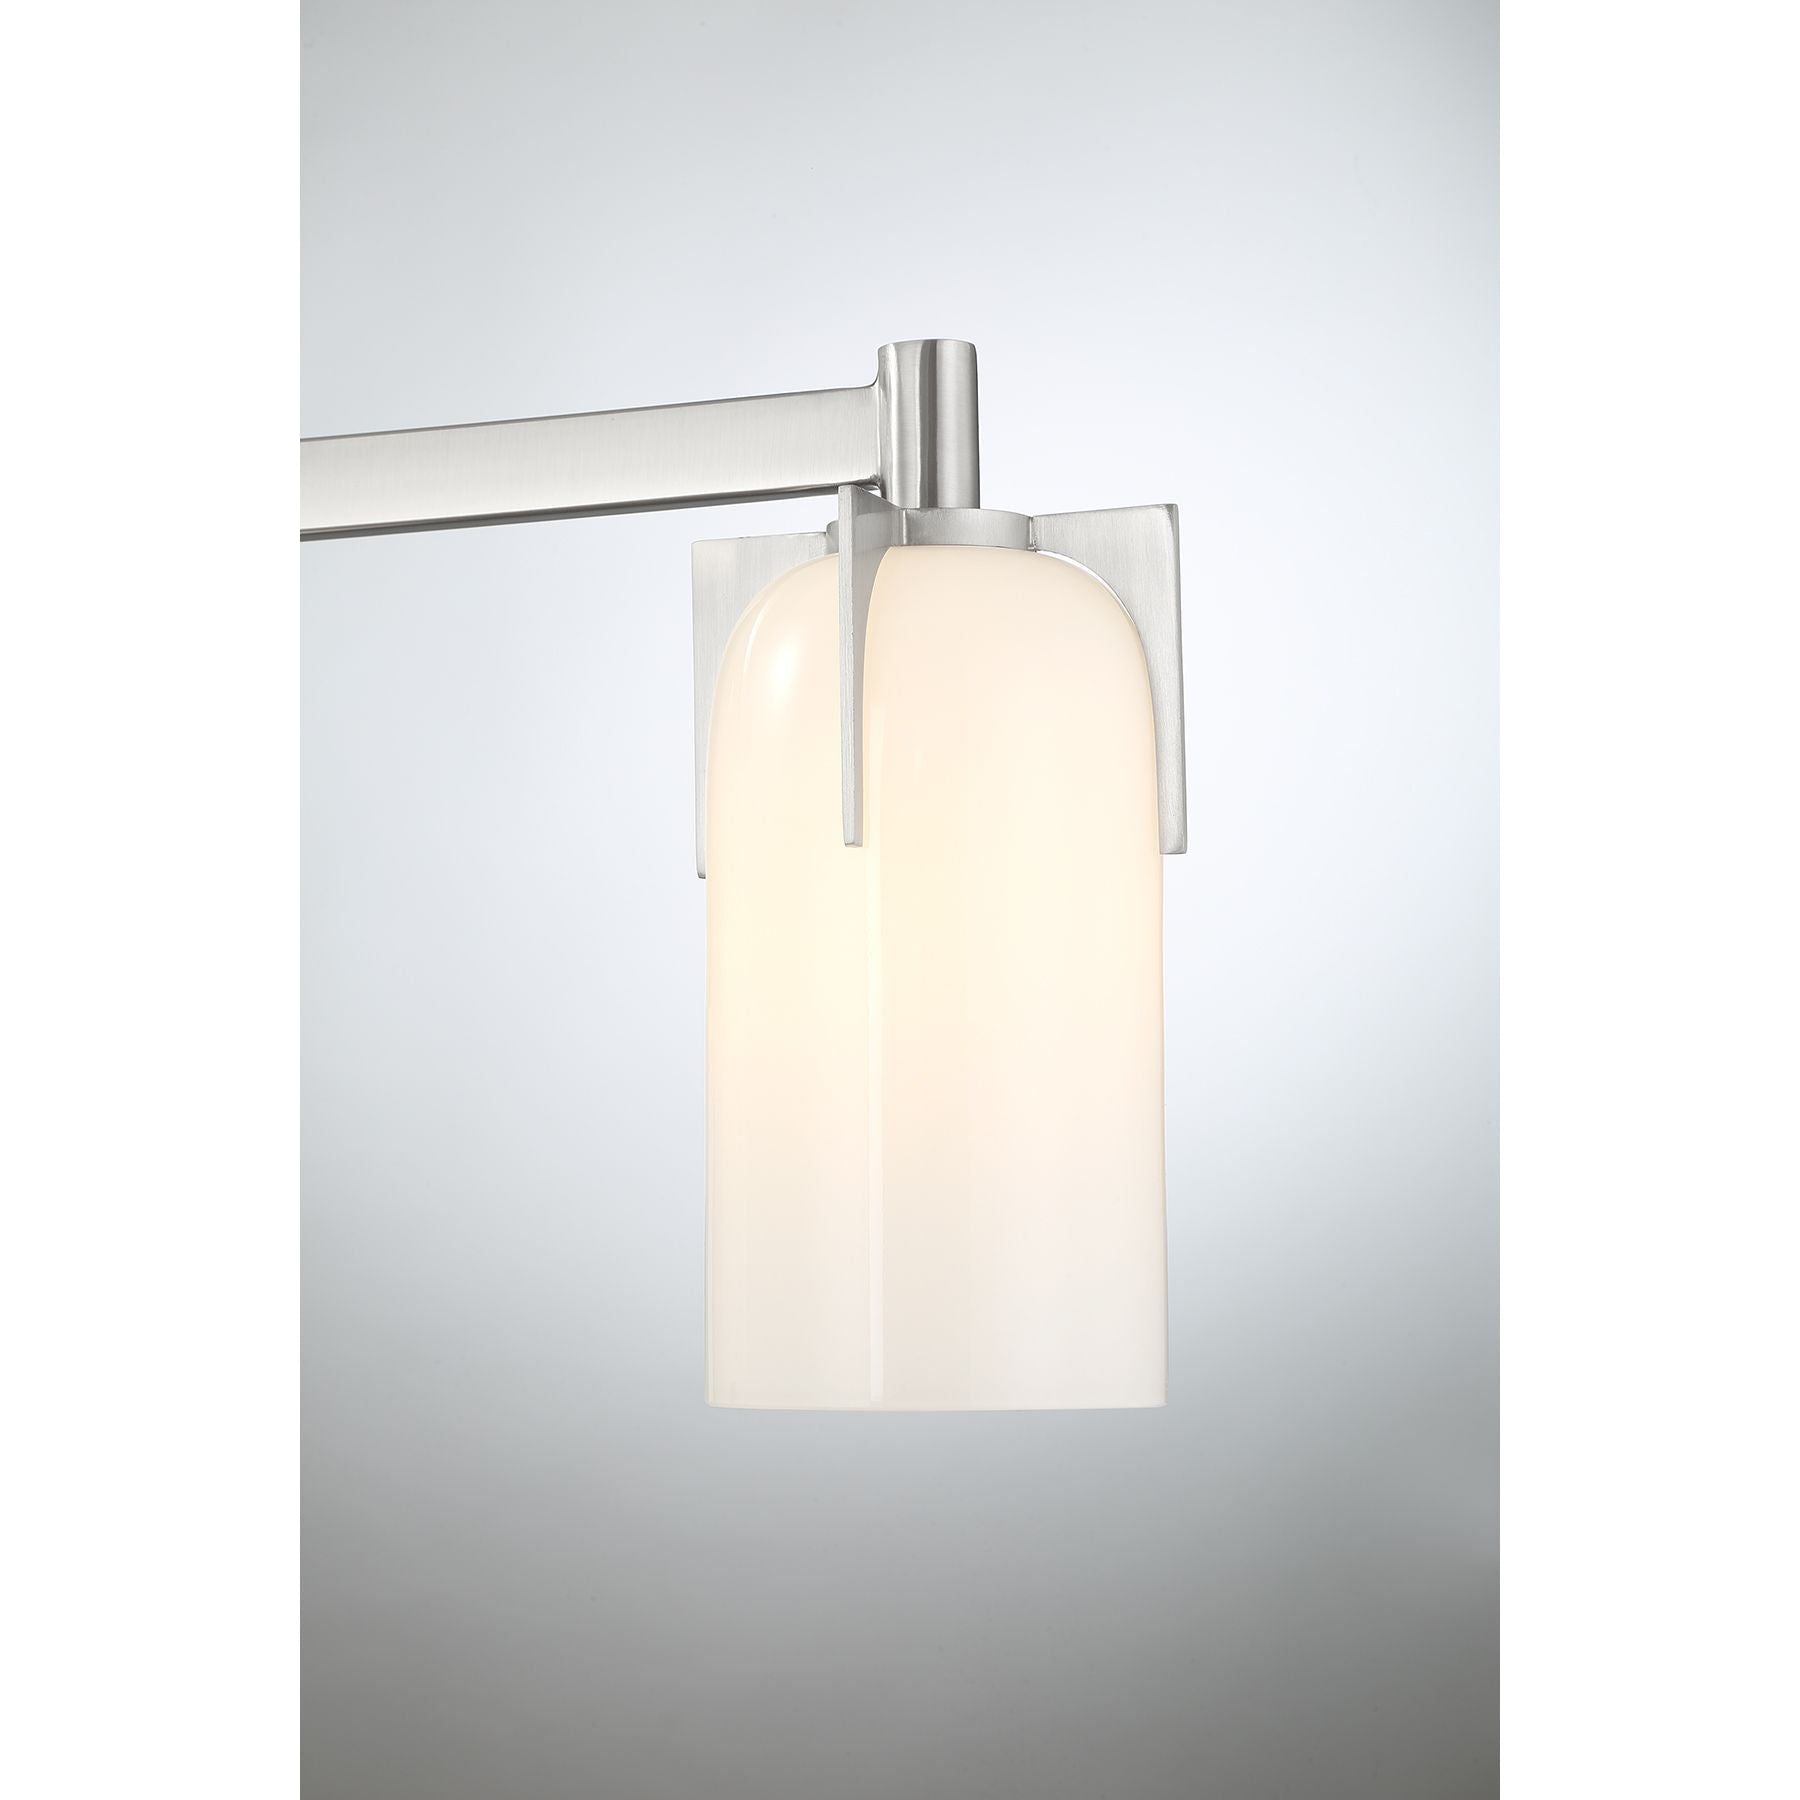 Caldwell 3-Light Bathroom Vanity Light